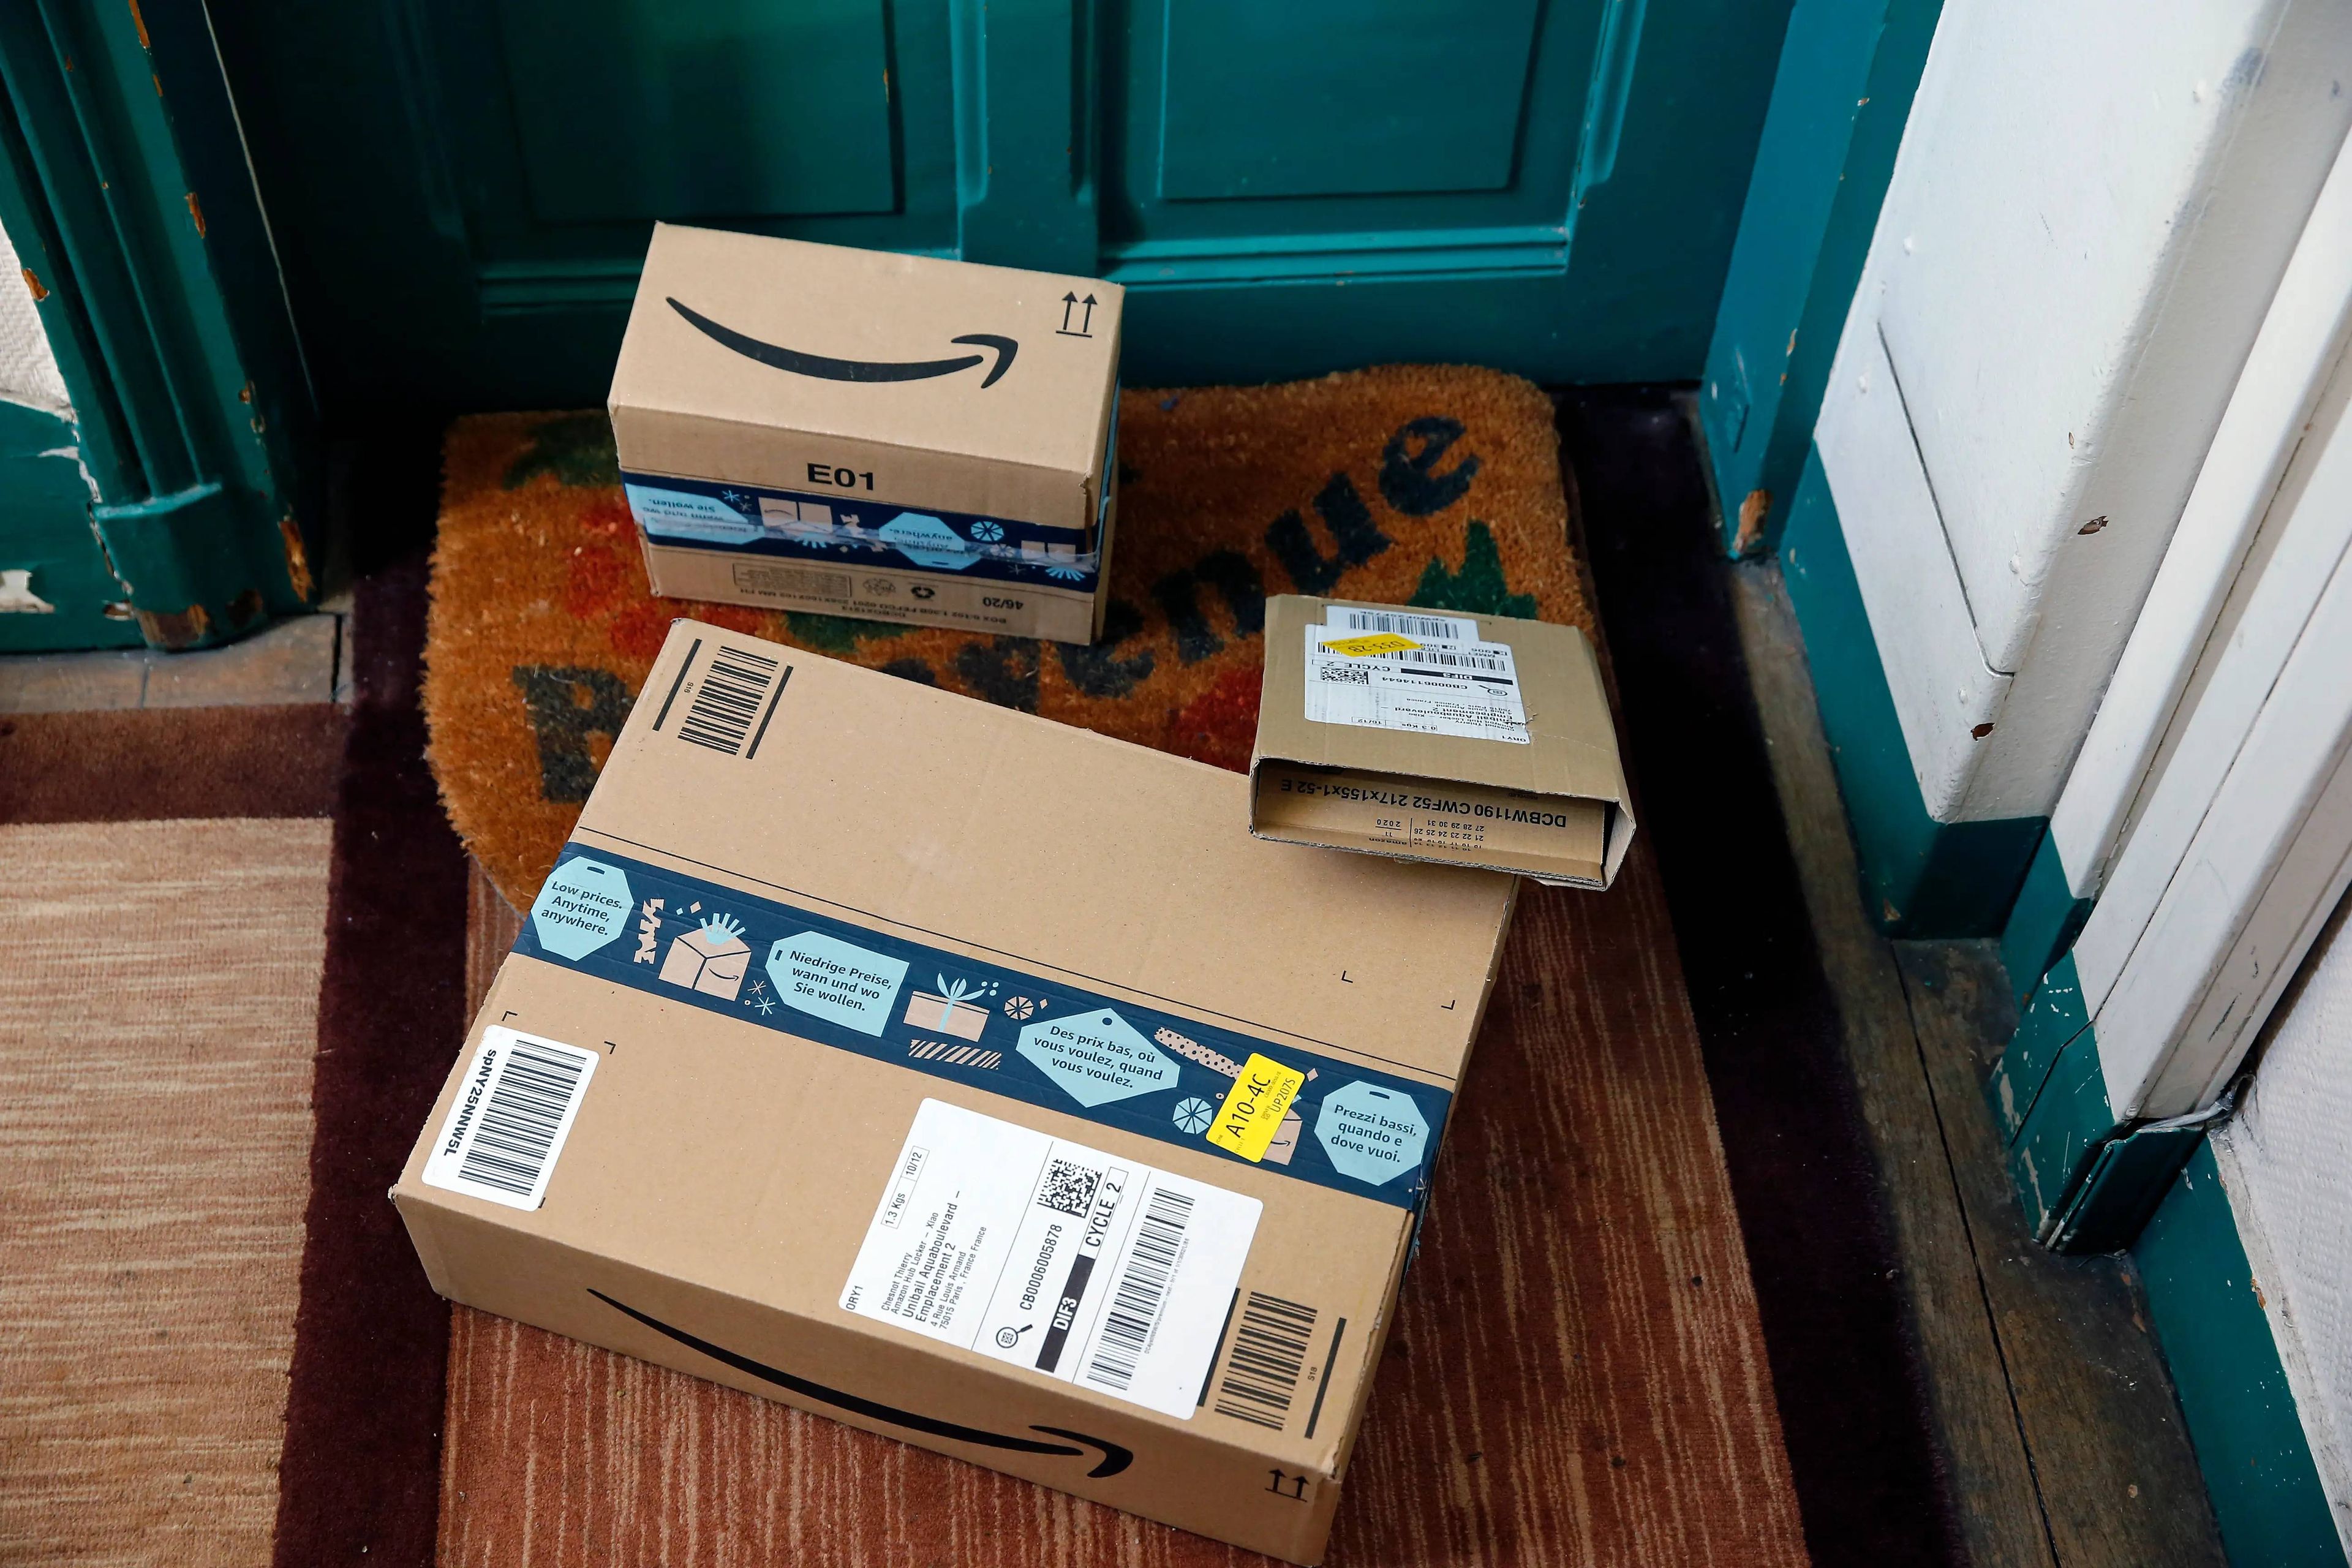 Los paquetes de Amazon suelen dejarse junto a la puerta de entrada, a menos que se solicite lo contrario.